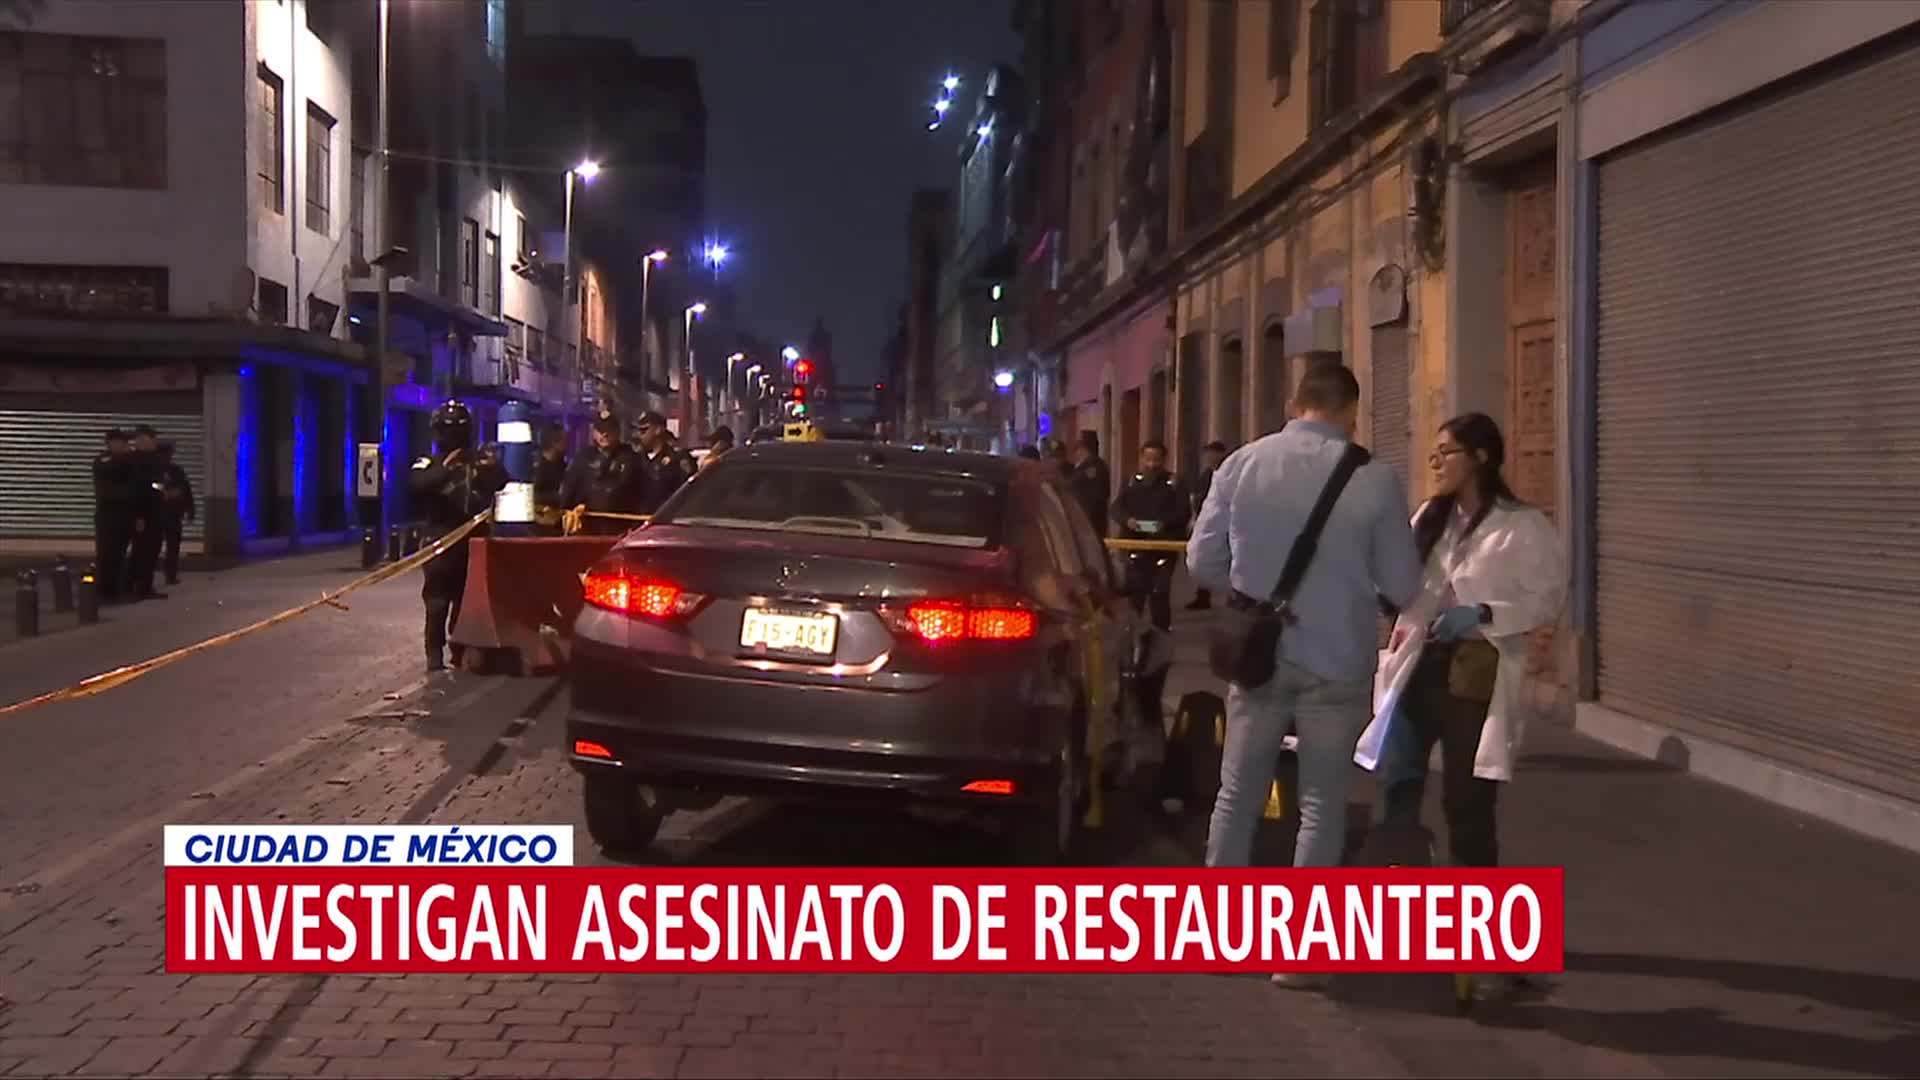 Foto: Homicidio de restaurantero en CDMX, podría tratarse de un cobro de piso